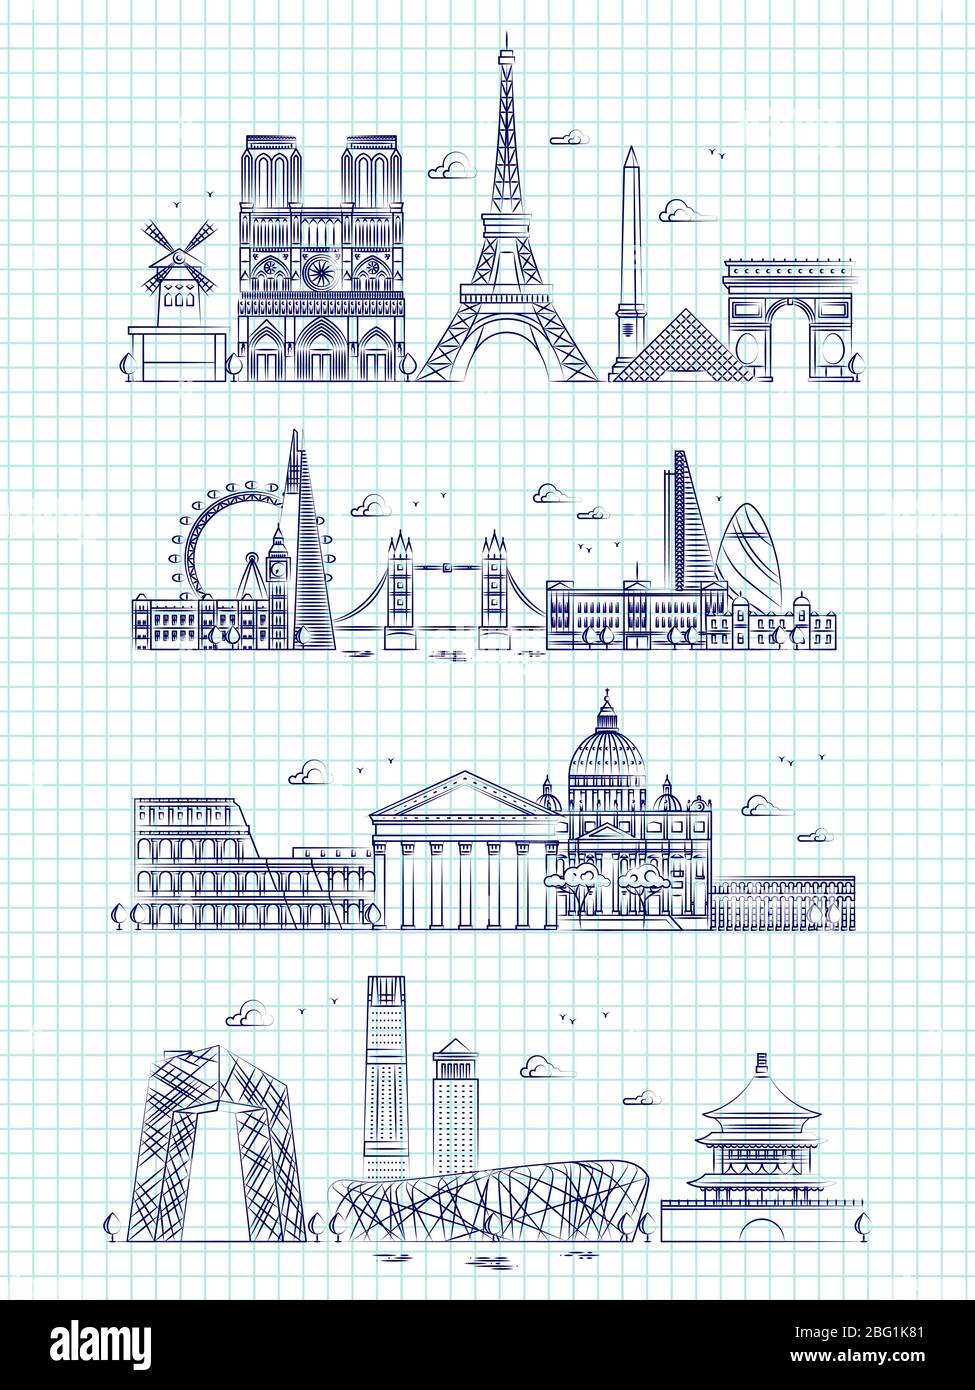 Beliebte Wort Städte Umriss Panorama auf Notebook-Seite. Gebäude Panorama Stadtbild london und rom, paris und hongkong Illustration Stock Vektor